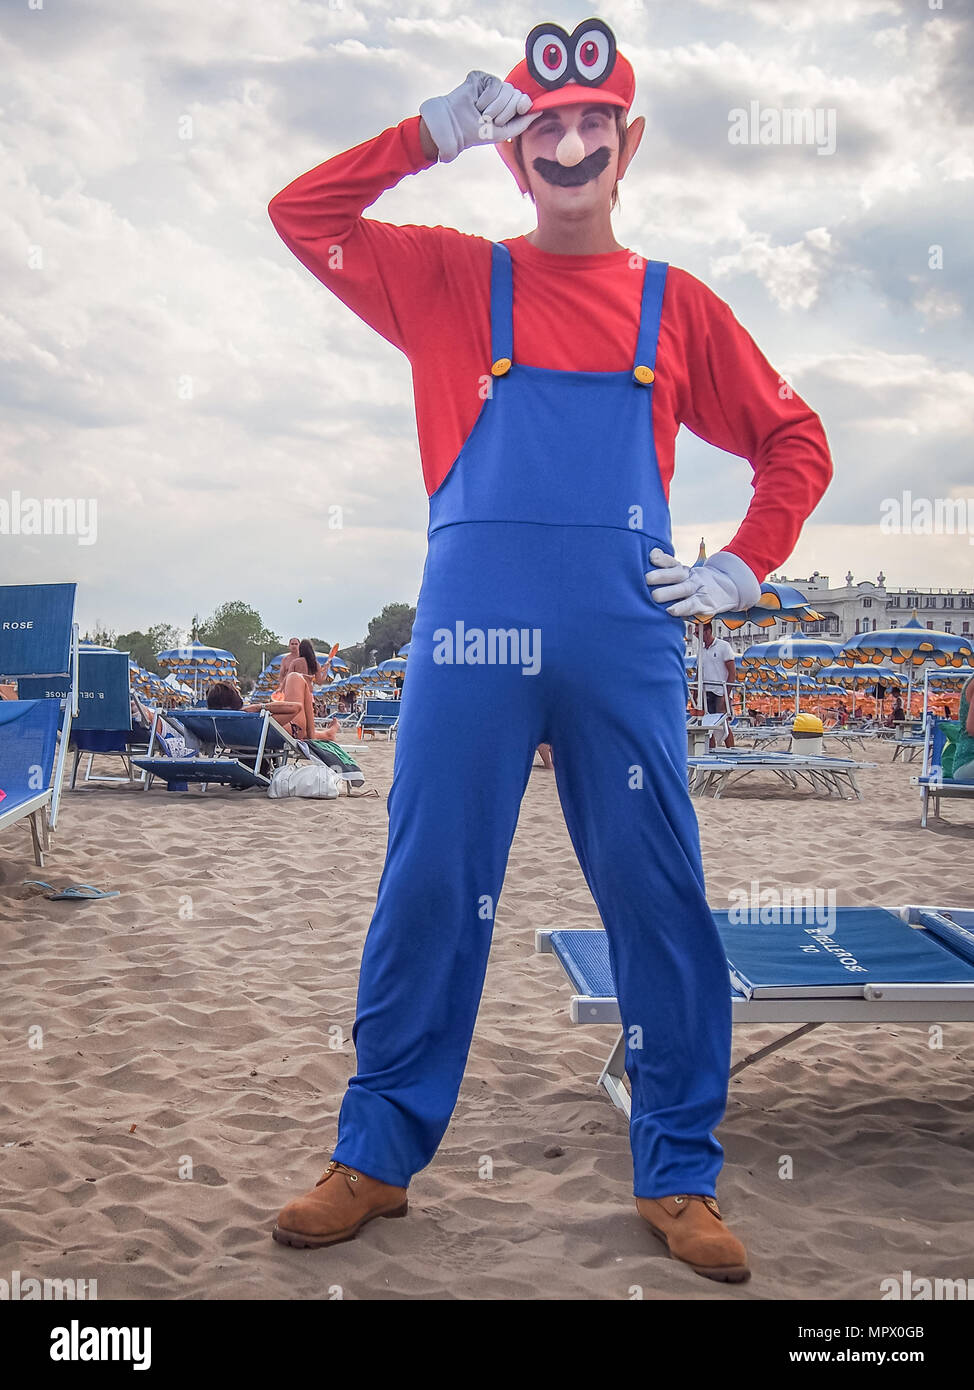 RIMINI, ITALIA-luglio 22, 2017: giovane cosplayer uomo nel costume di Mario in posa sulla spiaggia Foto Stock